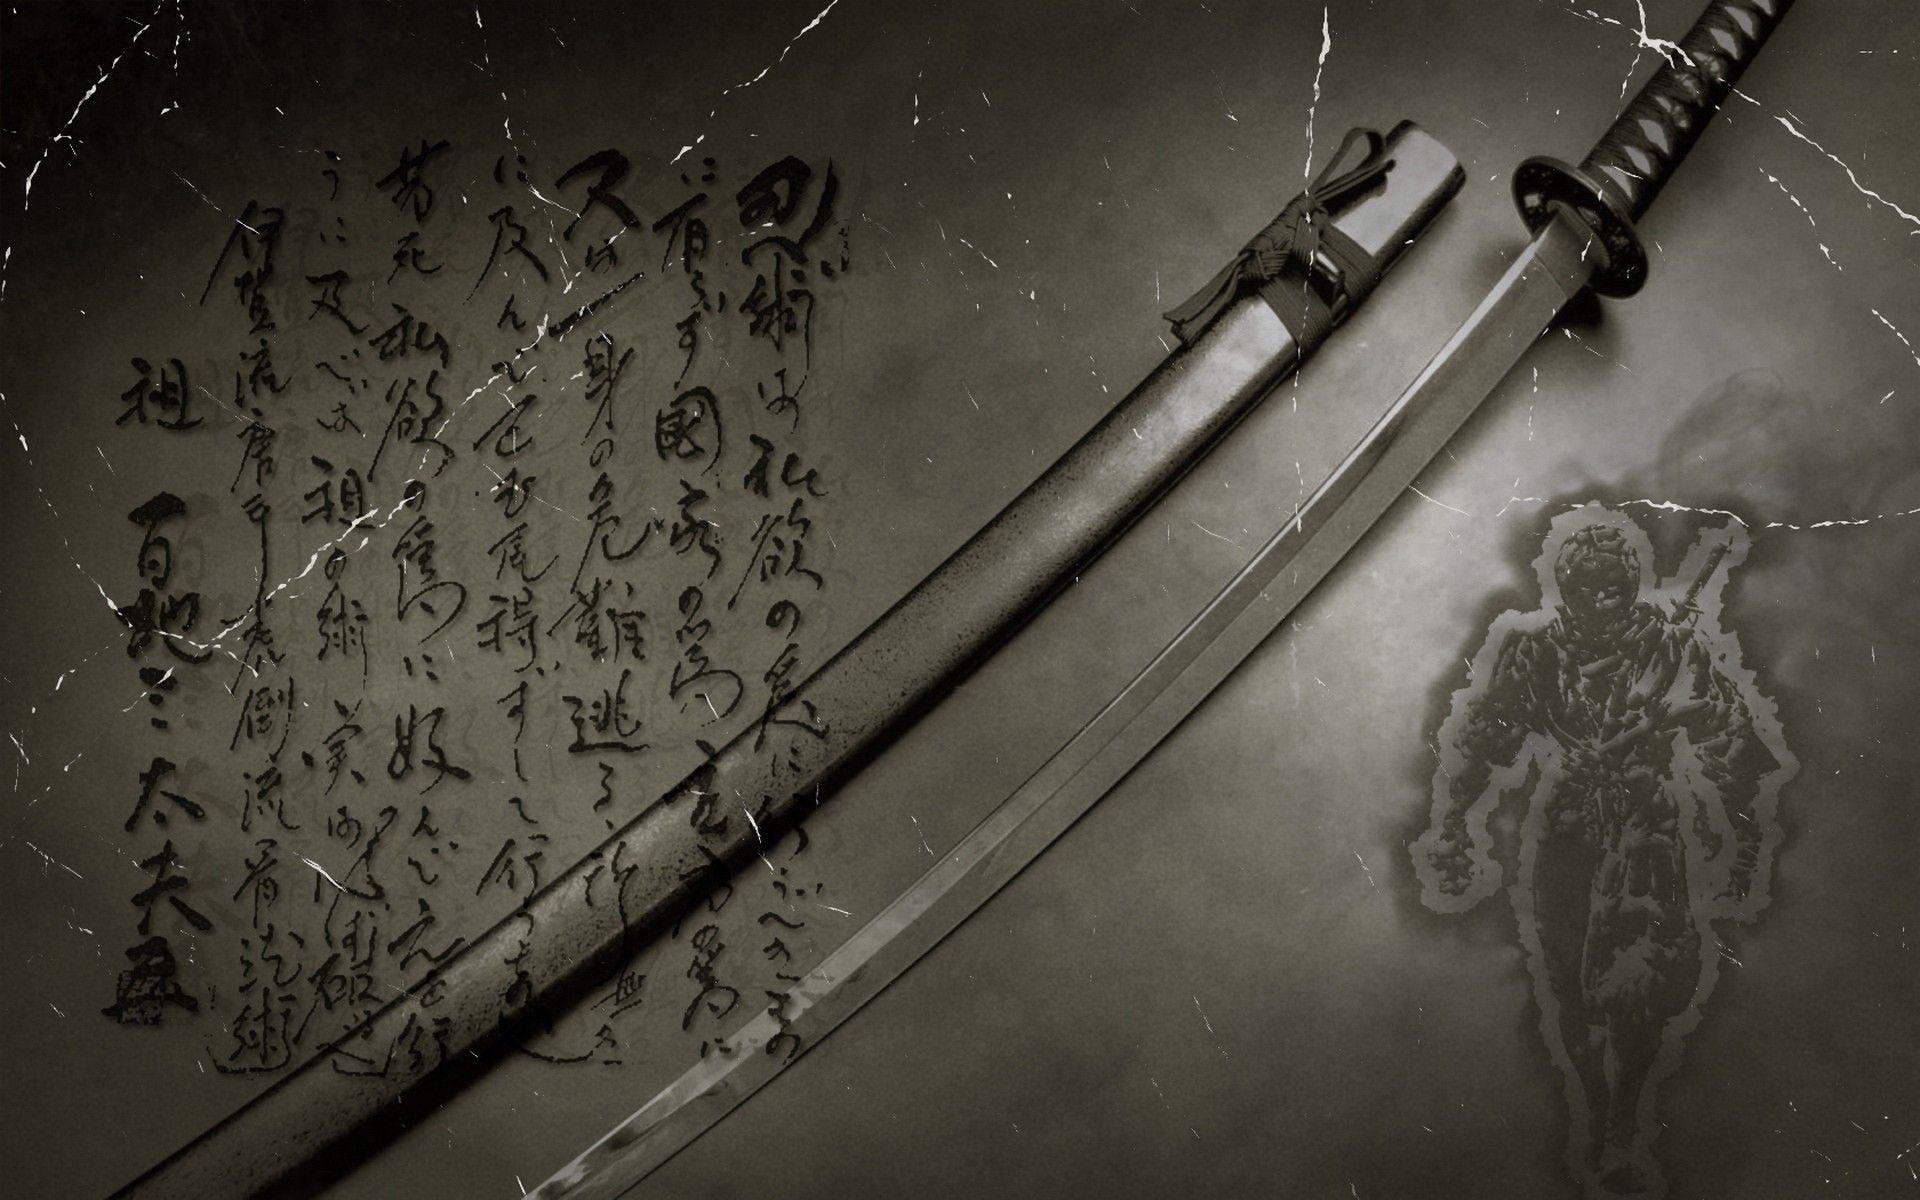 ninjas, katana, gray, samurai, japanese, kanji, swords, inscription